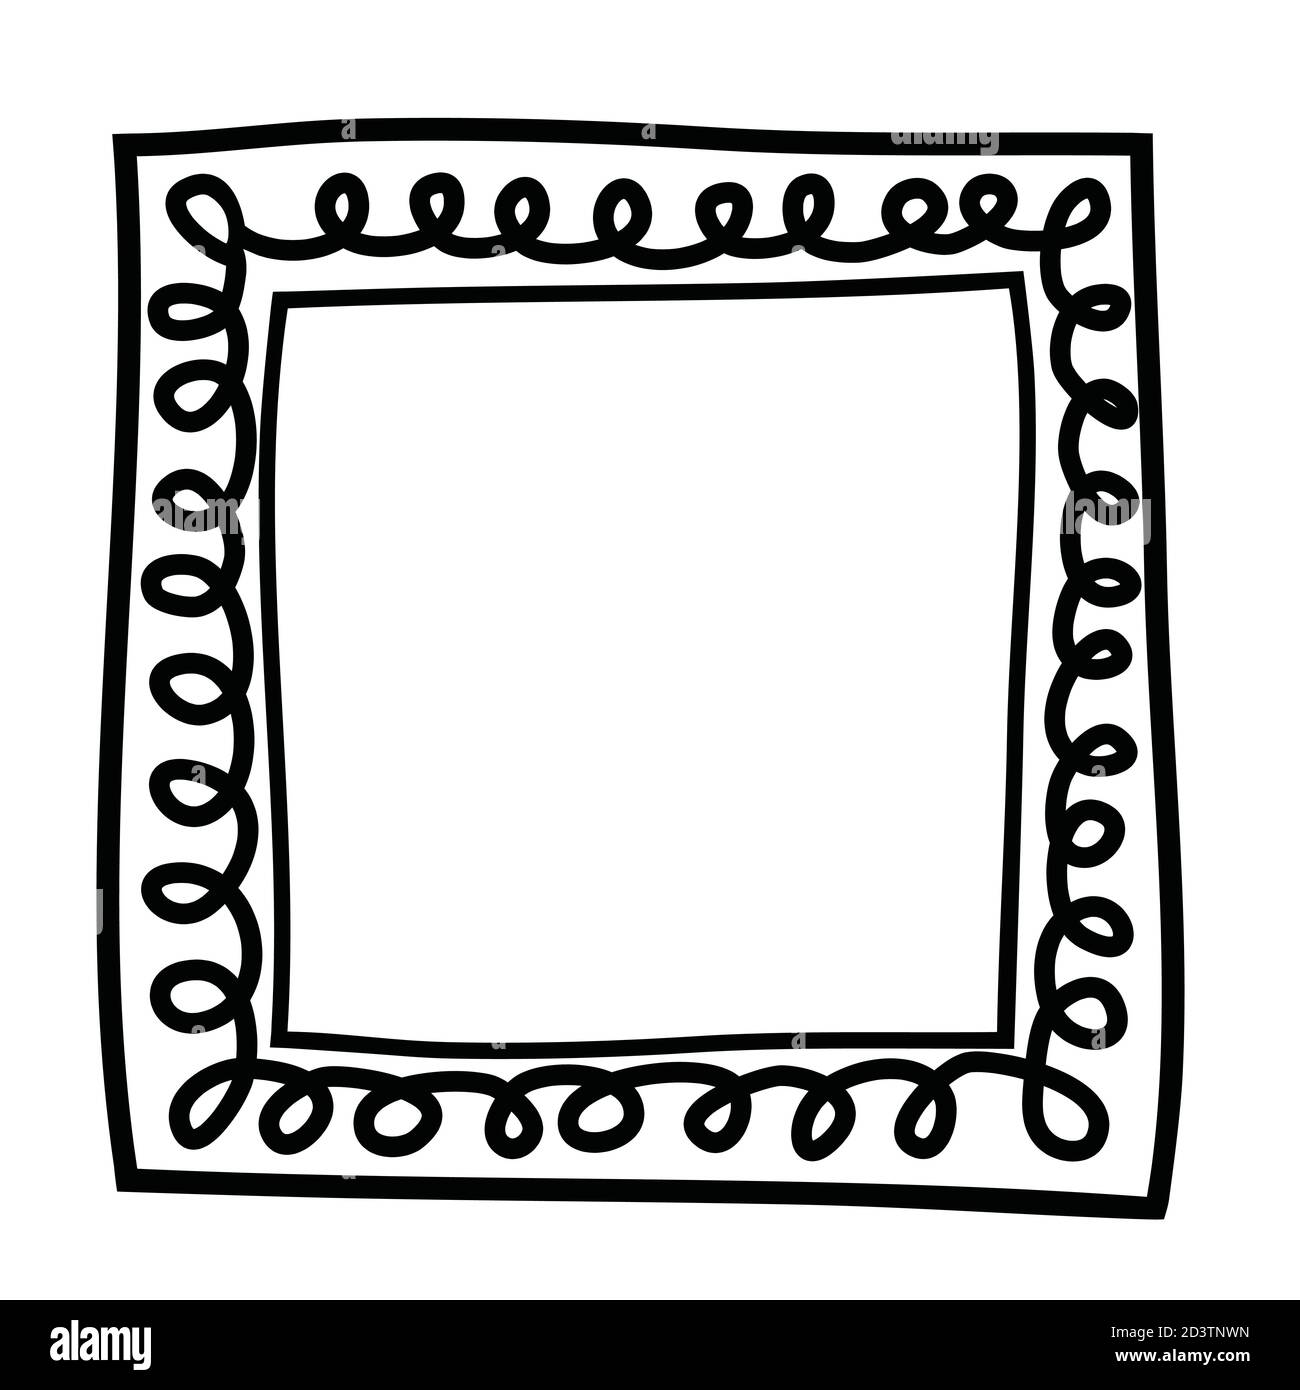 Cornice quadrata disegnata a mano con ricci. Elemento di design bianco e  nero per decorazione. Semplice bordo doodle spazio di copia incolore  Immagine e Vettoriale - Alamy